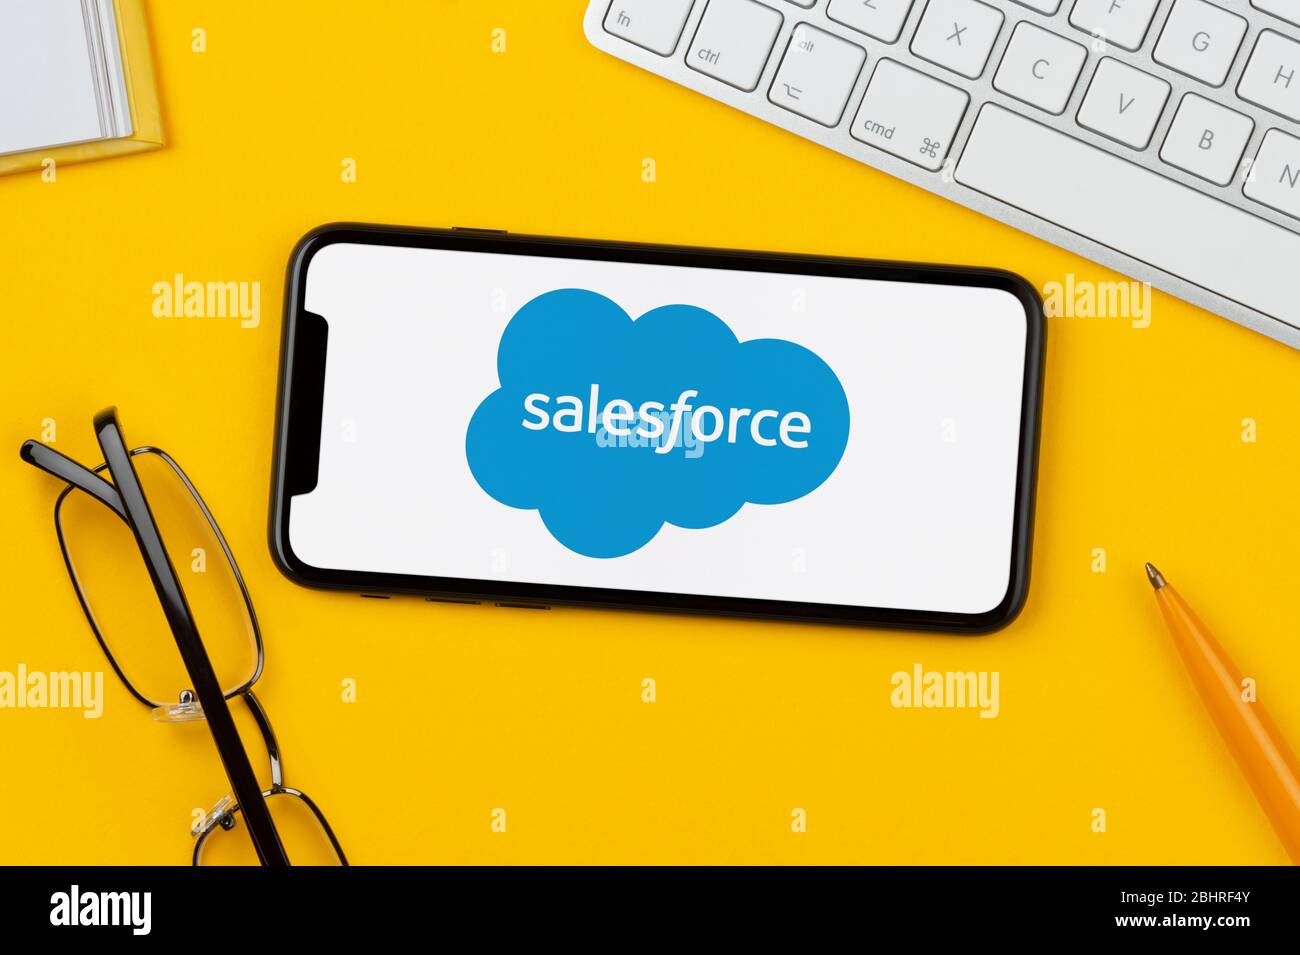 Un smartphone que muestra el logotipo de Salesforce se apoya sobre un fondo amarillo junto con un teclado, gafas, lápiz y libro (sólo para uso editorial). Foto de stock